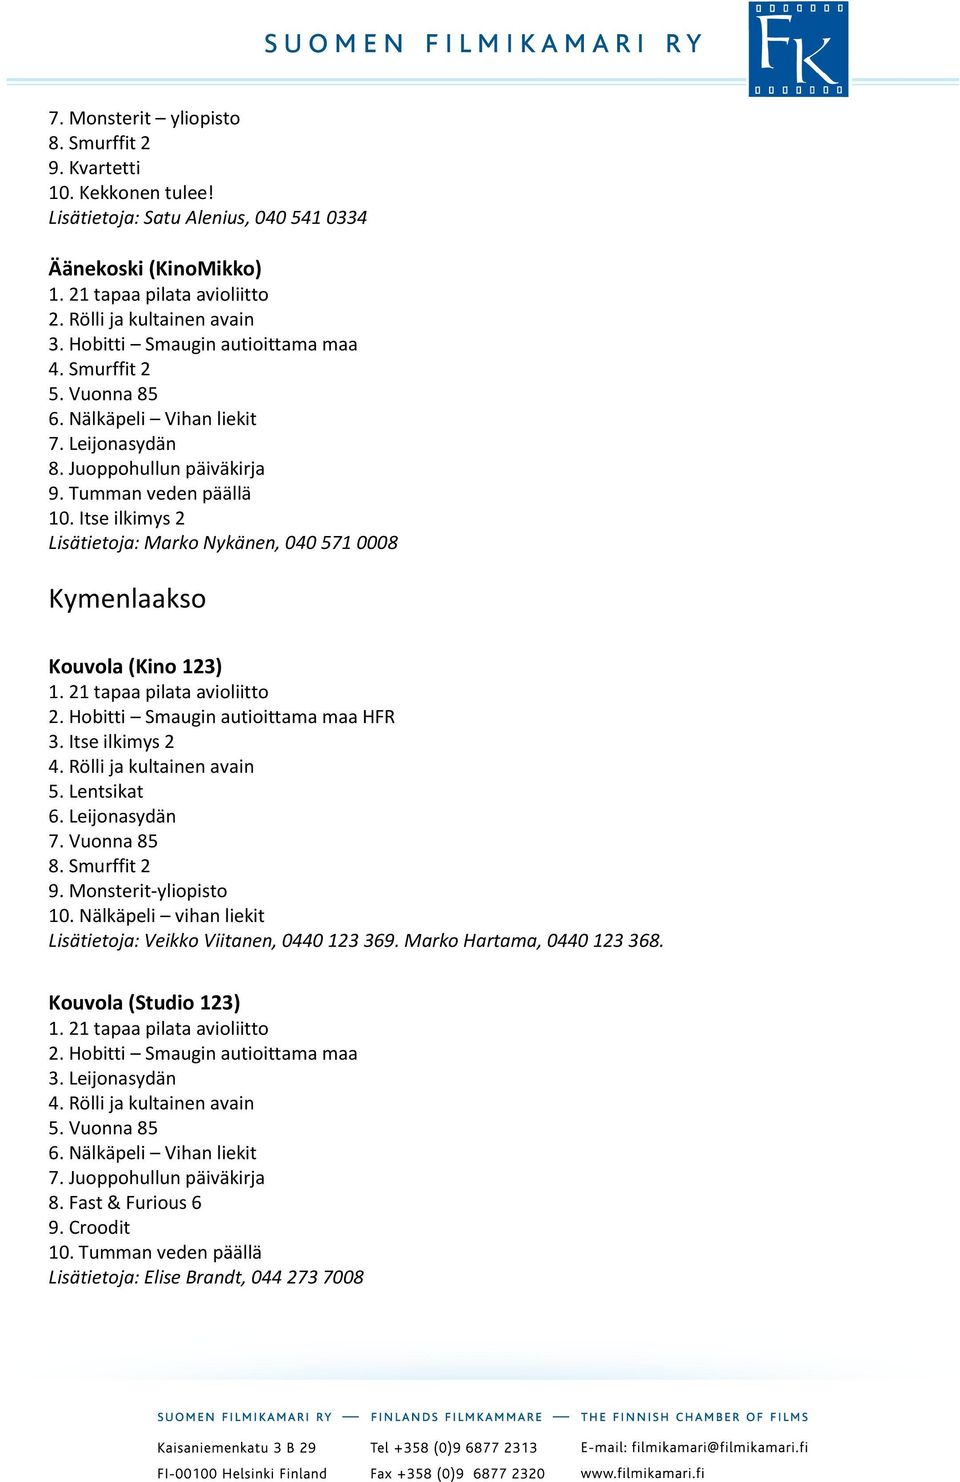 Itse ilkimys 2 Lisätietoja: Marko Nykänen, 040 571 0008 Kymenlaakso Kouvola (Kino 123) HFR 5. Lentsikat 6. Leijonasydän 7. Vuonna 85 8. Smurffit 2 9. Monsterit-yliopisto 10.